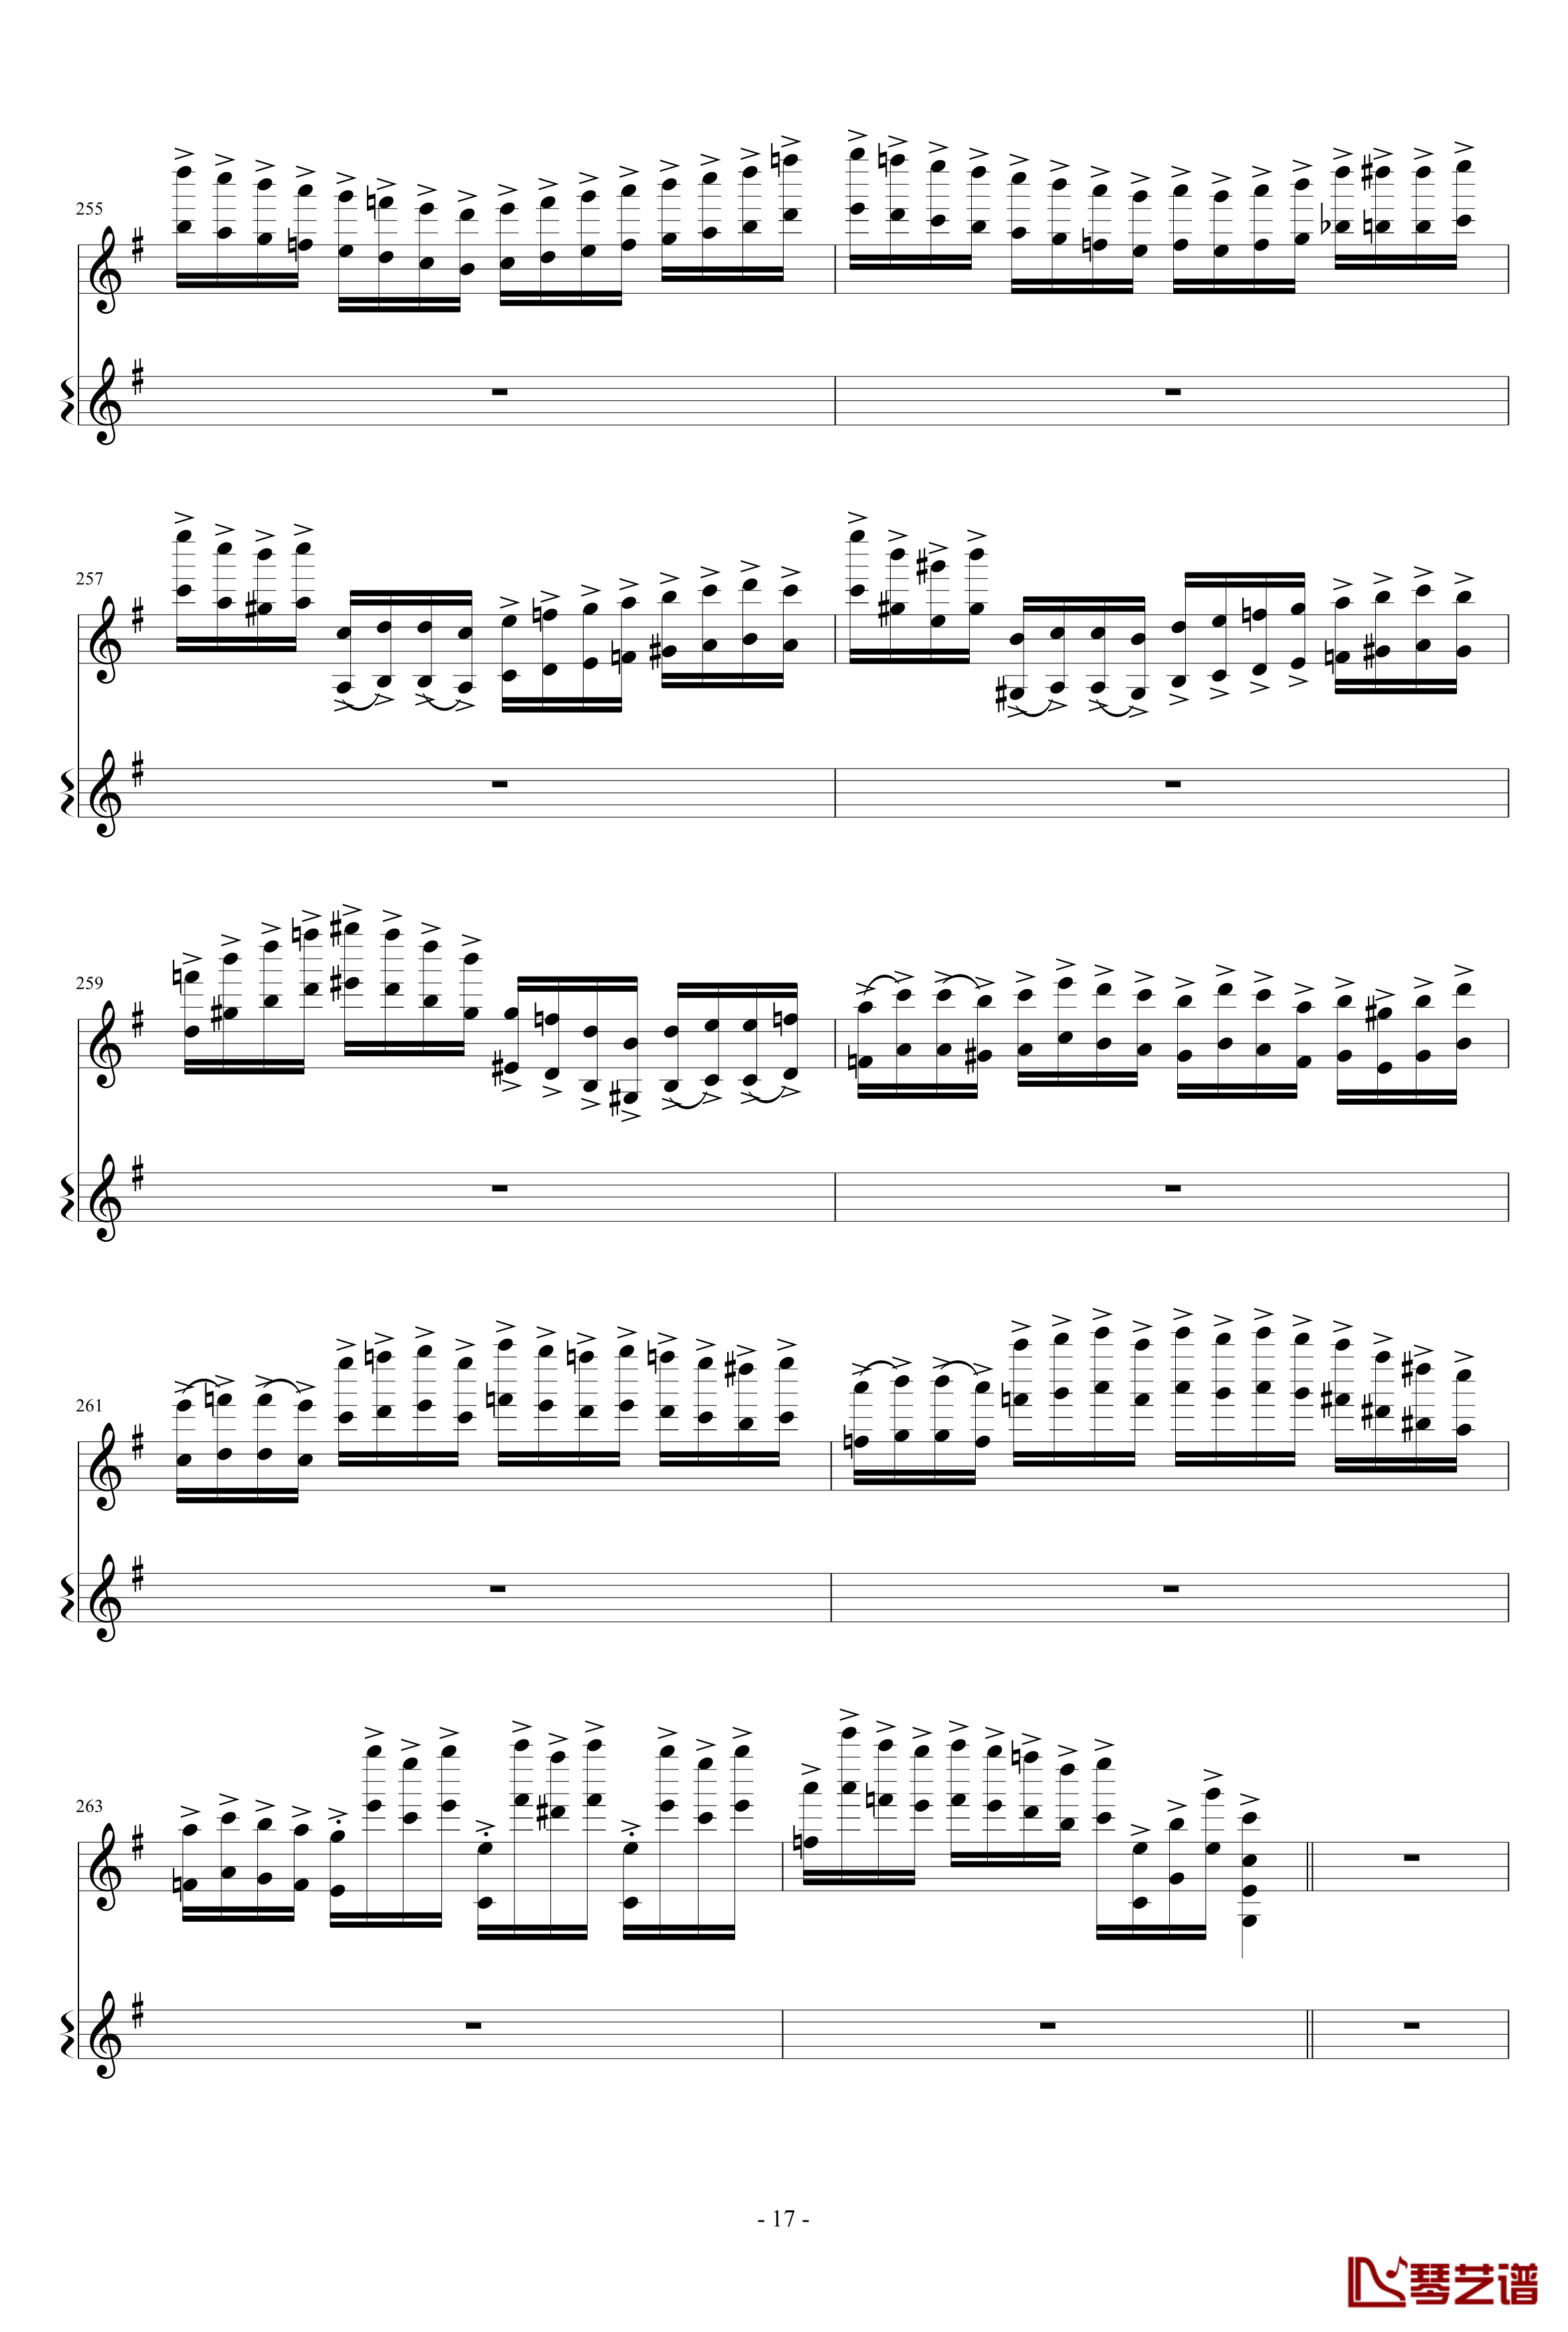 意大利国歌变奏曲钢琴谱-只修改了一个音-DXF17